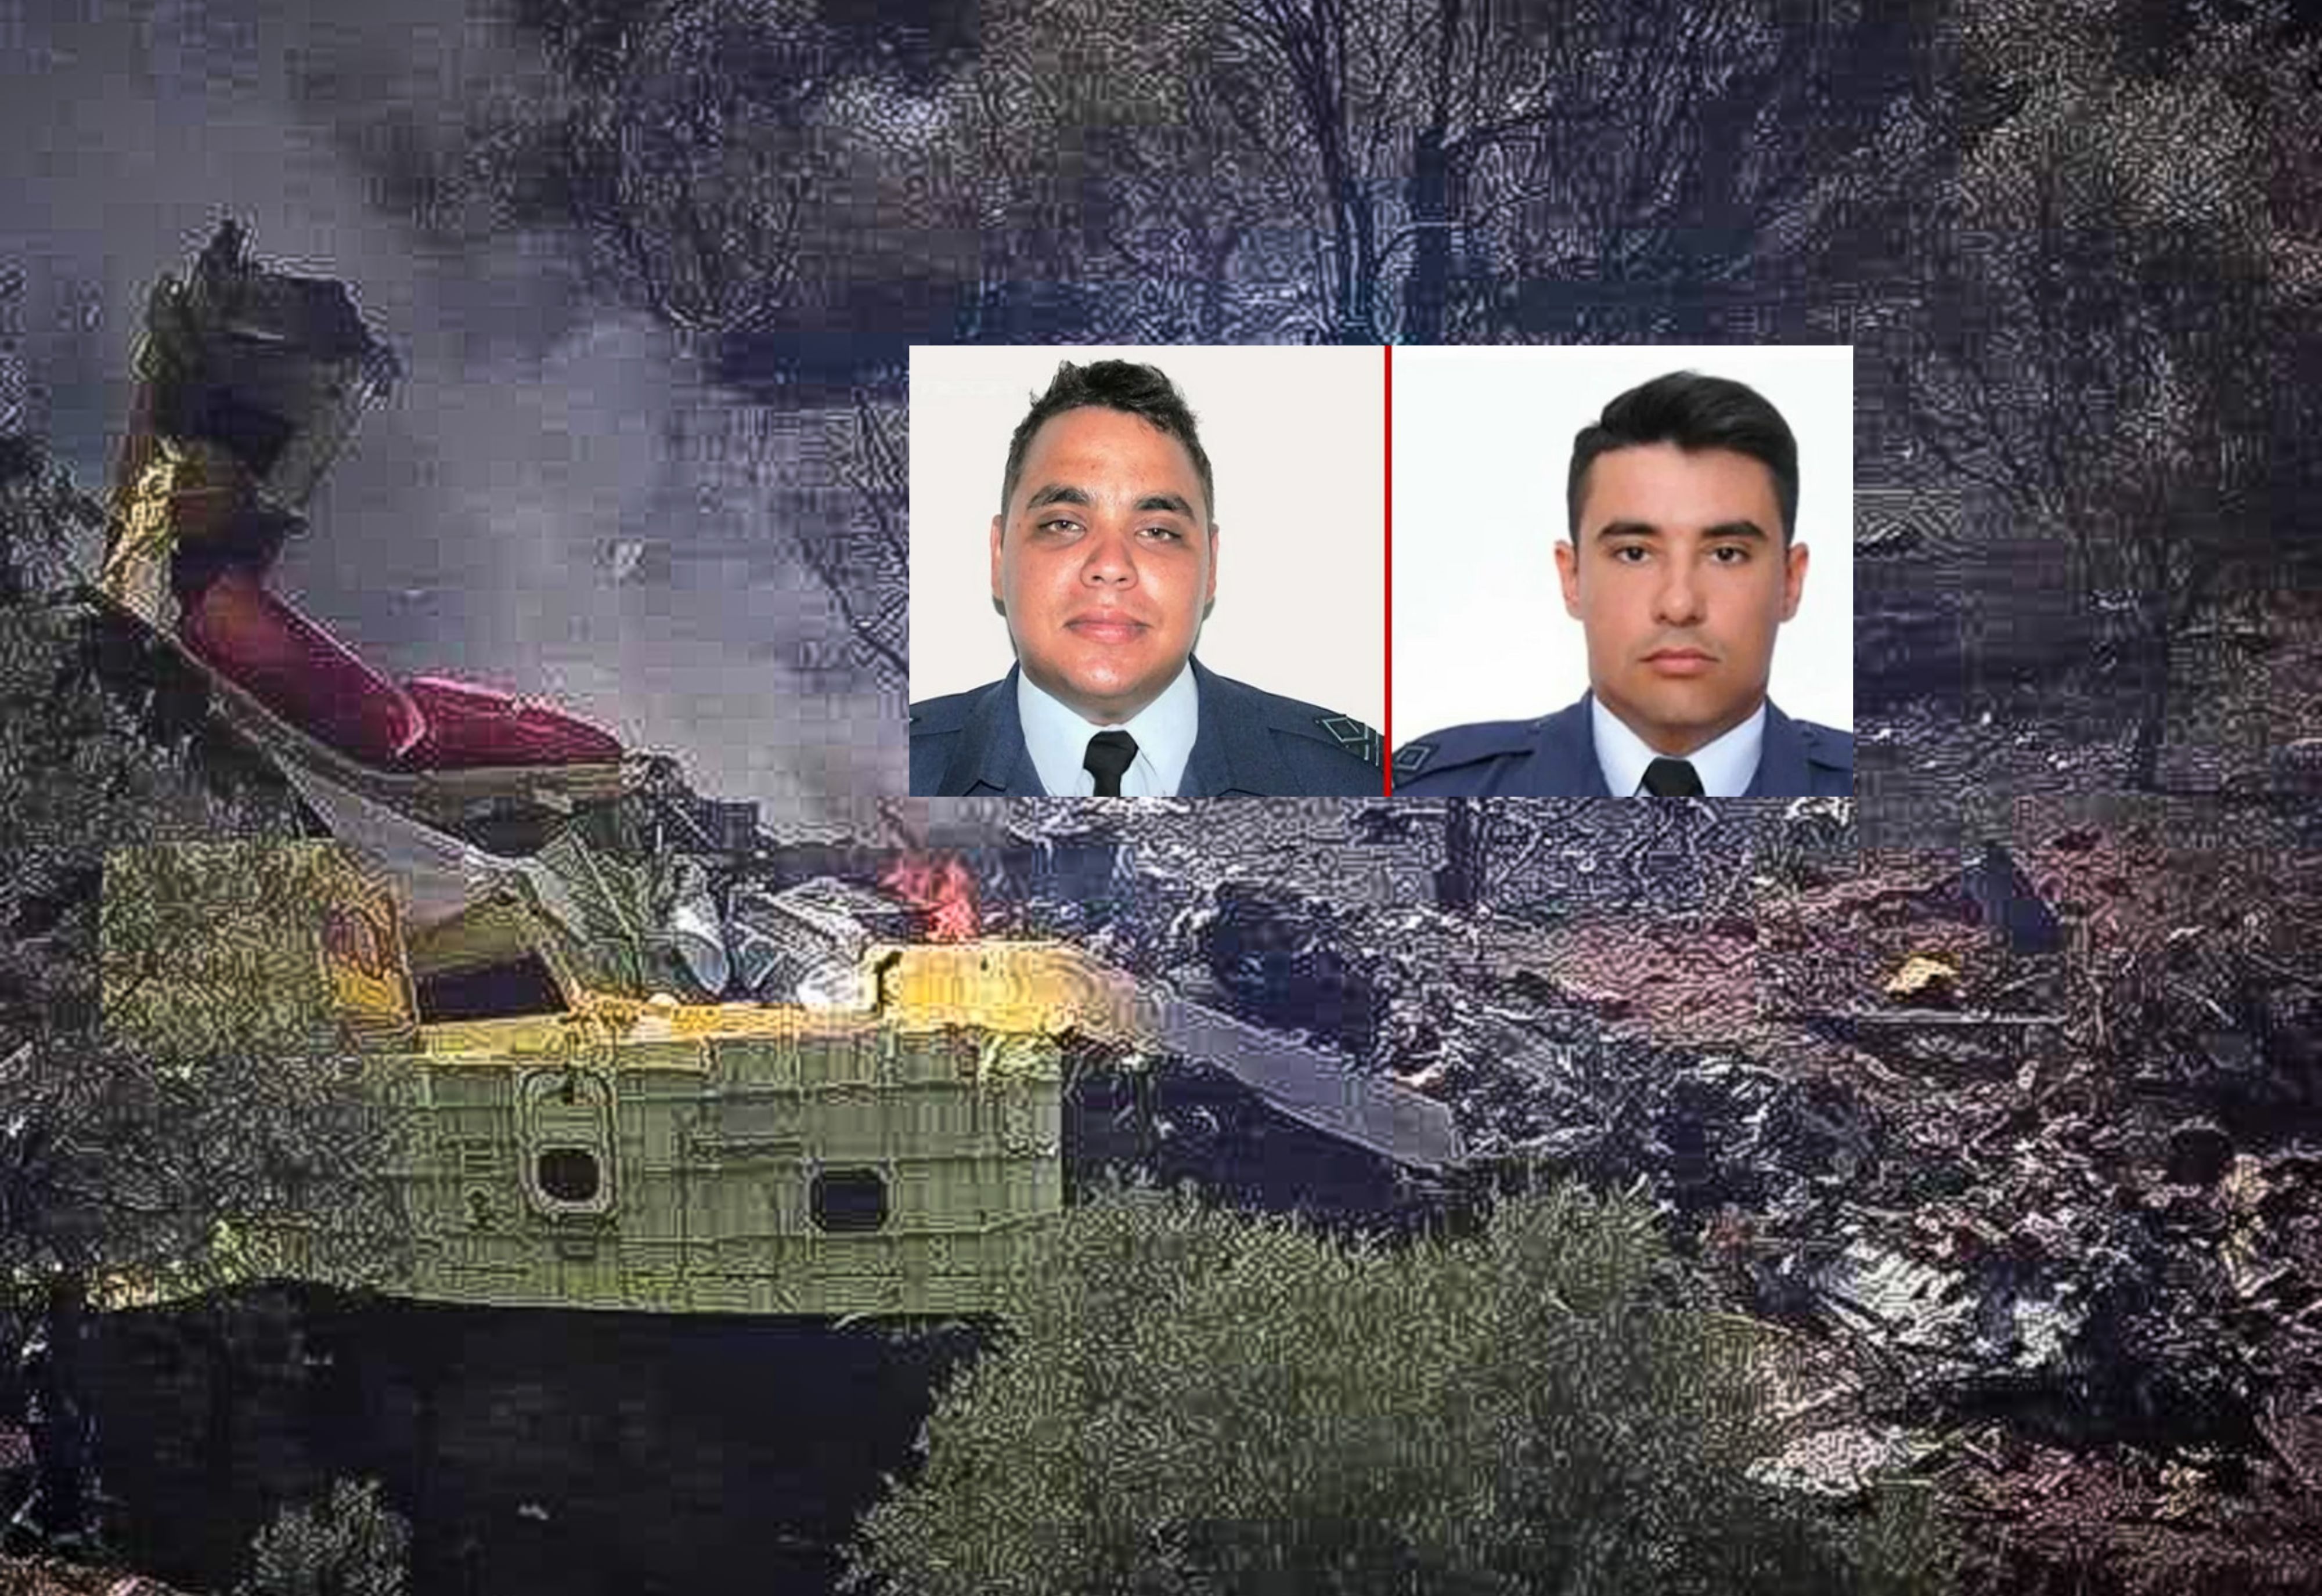 Τραγωδία με Canadair: Νεκροί οι δύο ήρωες πιλότοι – Τριήμερο εθνικό πένθος στις Ένοπλες Δυνάμεις (vids)